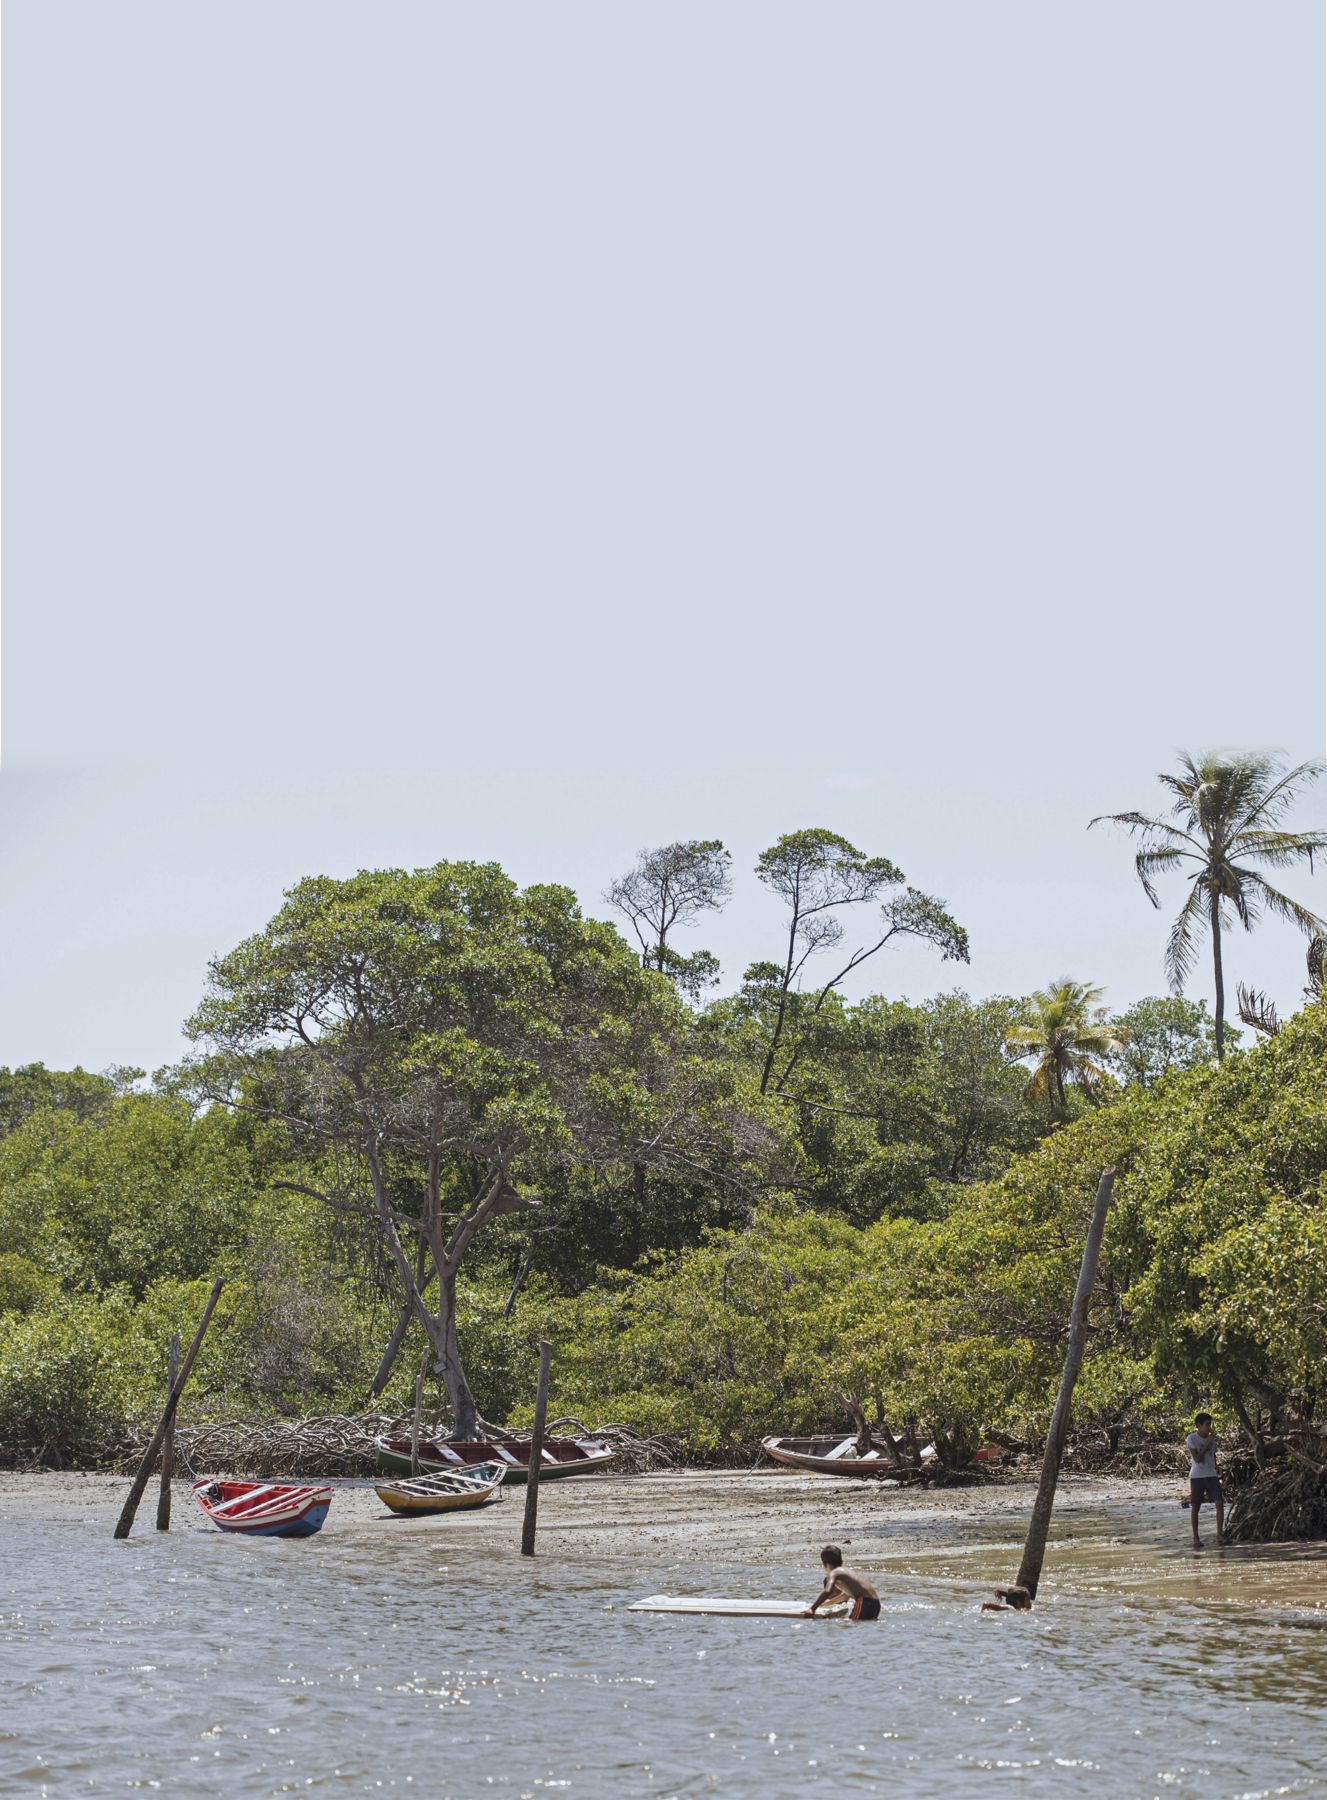 Fotografia. Margem de um rio com barcos pequenos, três pessoas na água e uma na margem. Ao redor, há vegetação densa com árvores diversas.